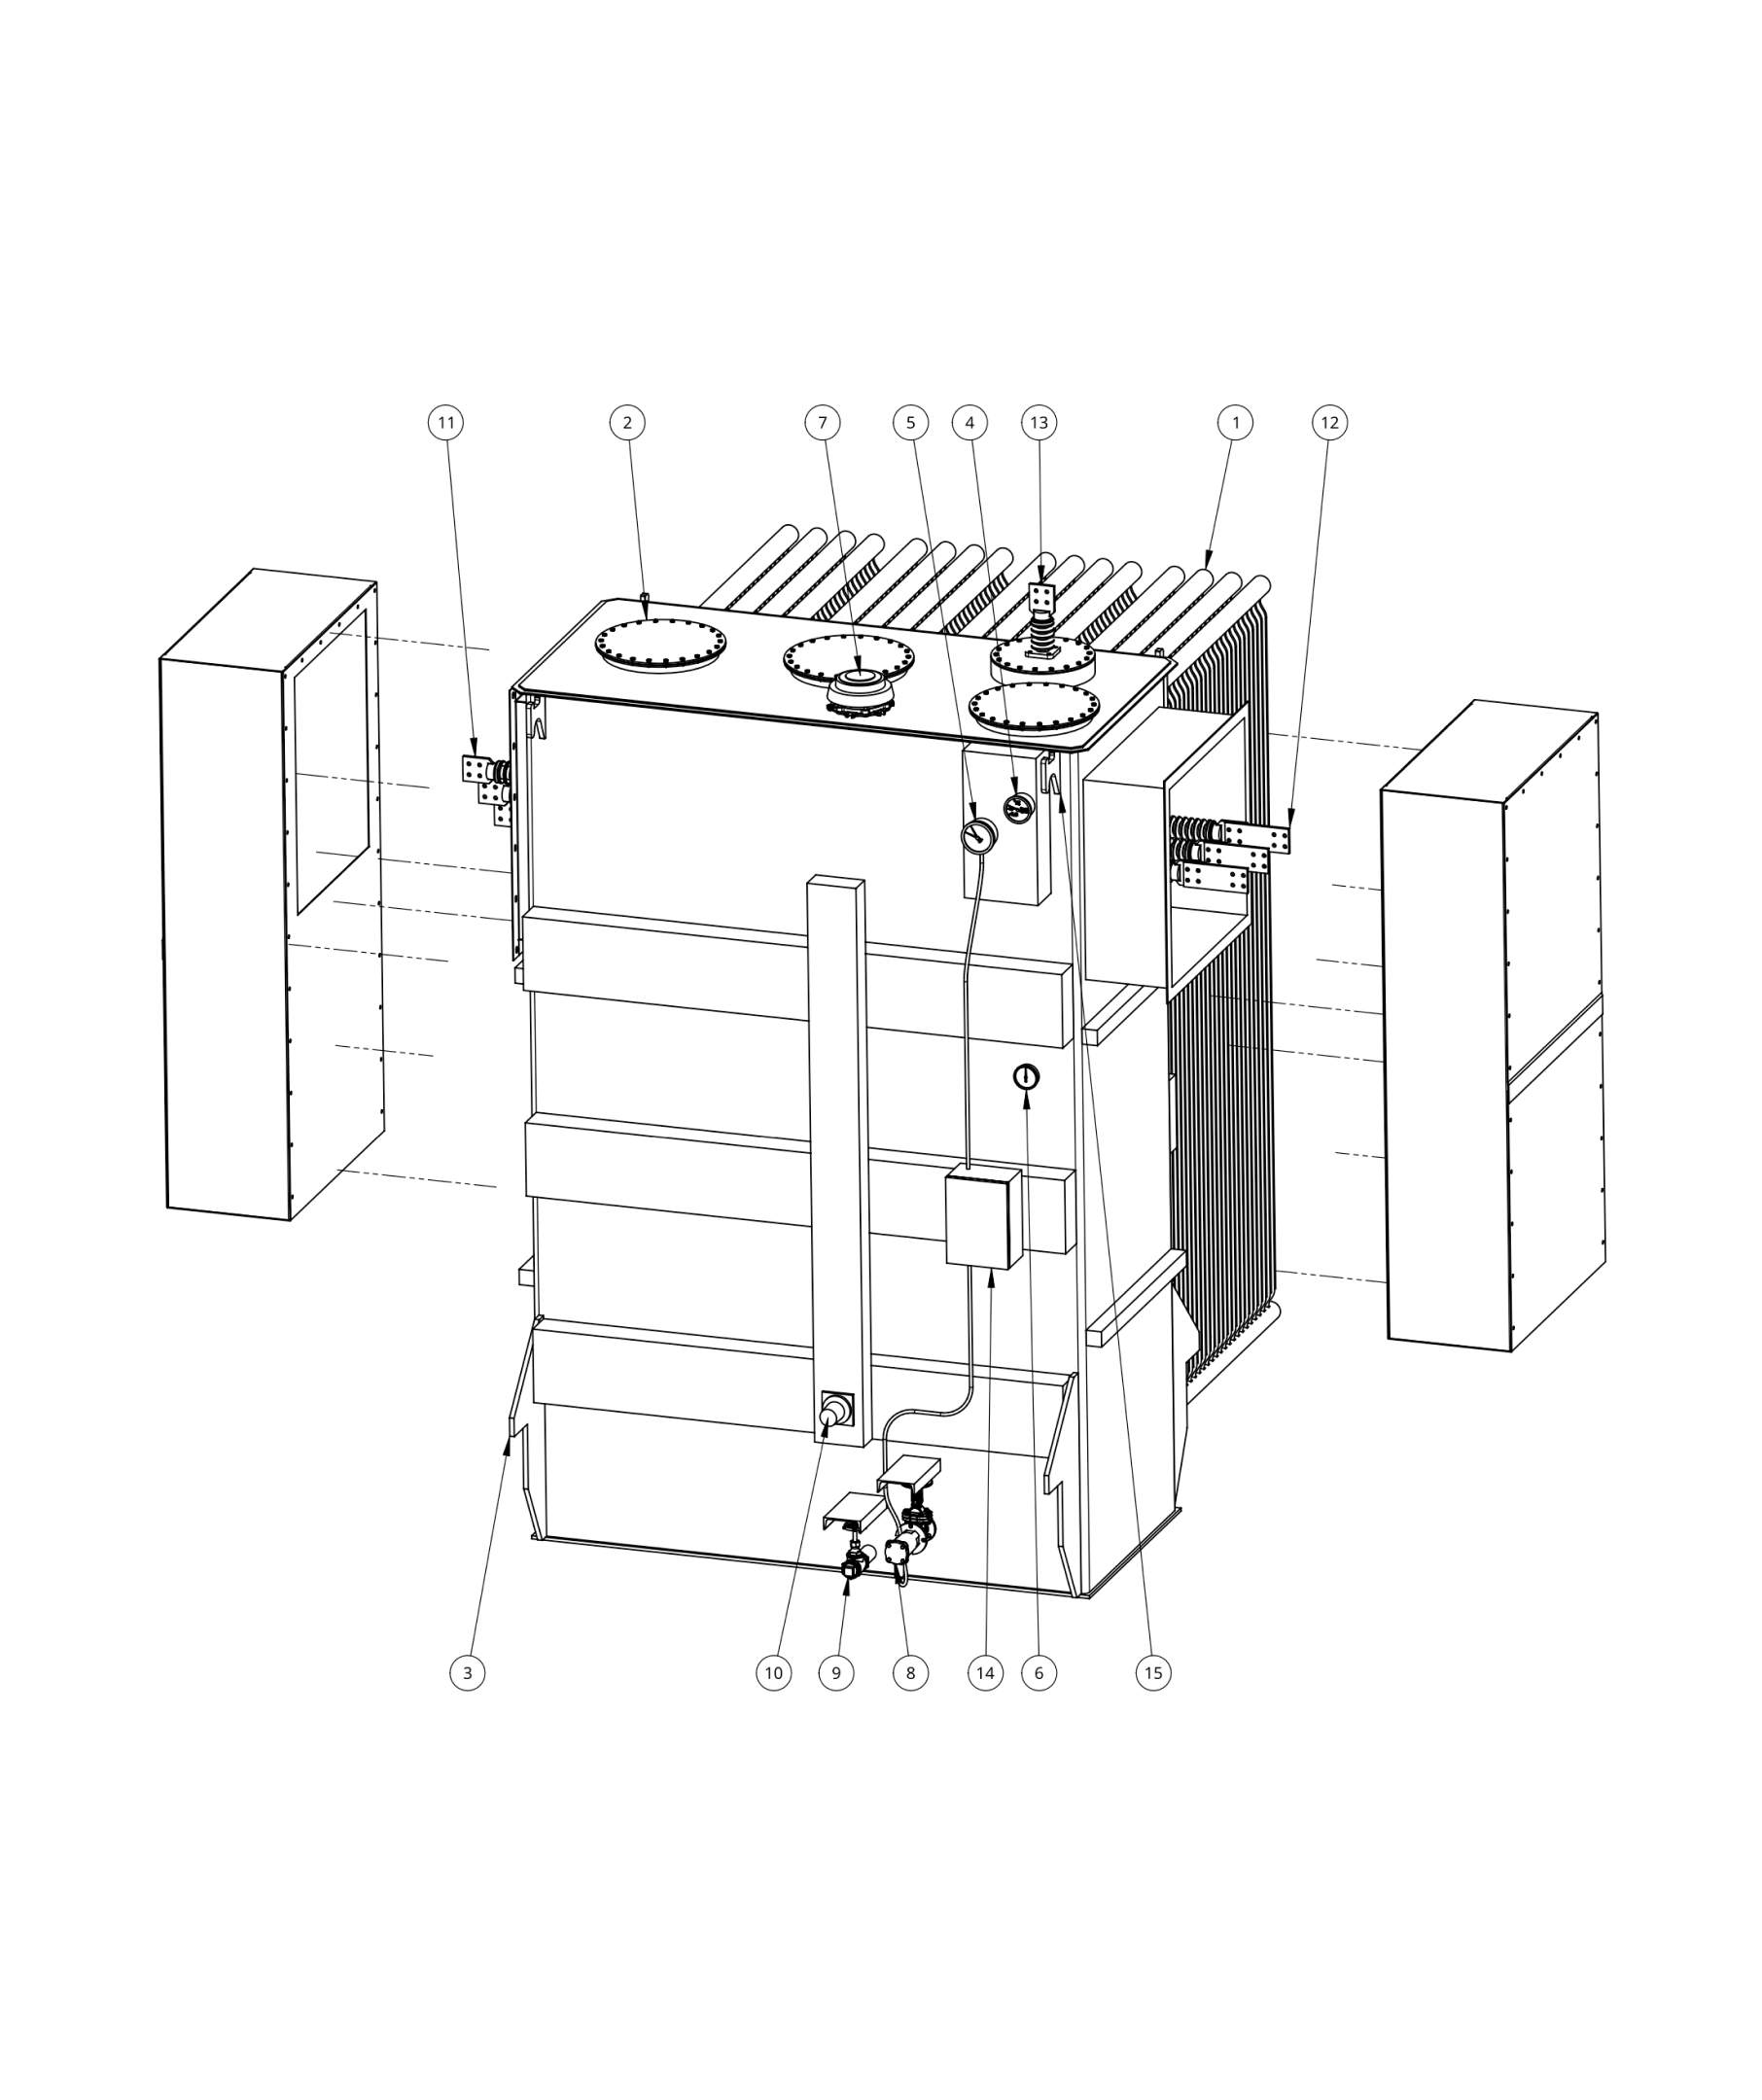 Technical illustration of standard substation transformer